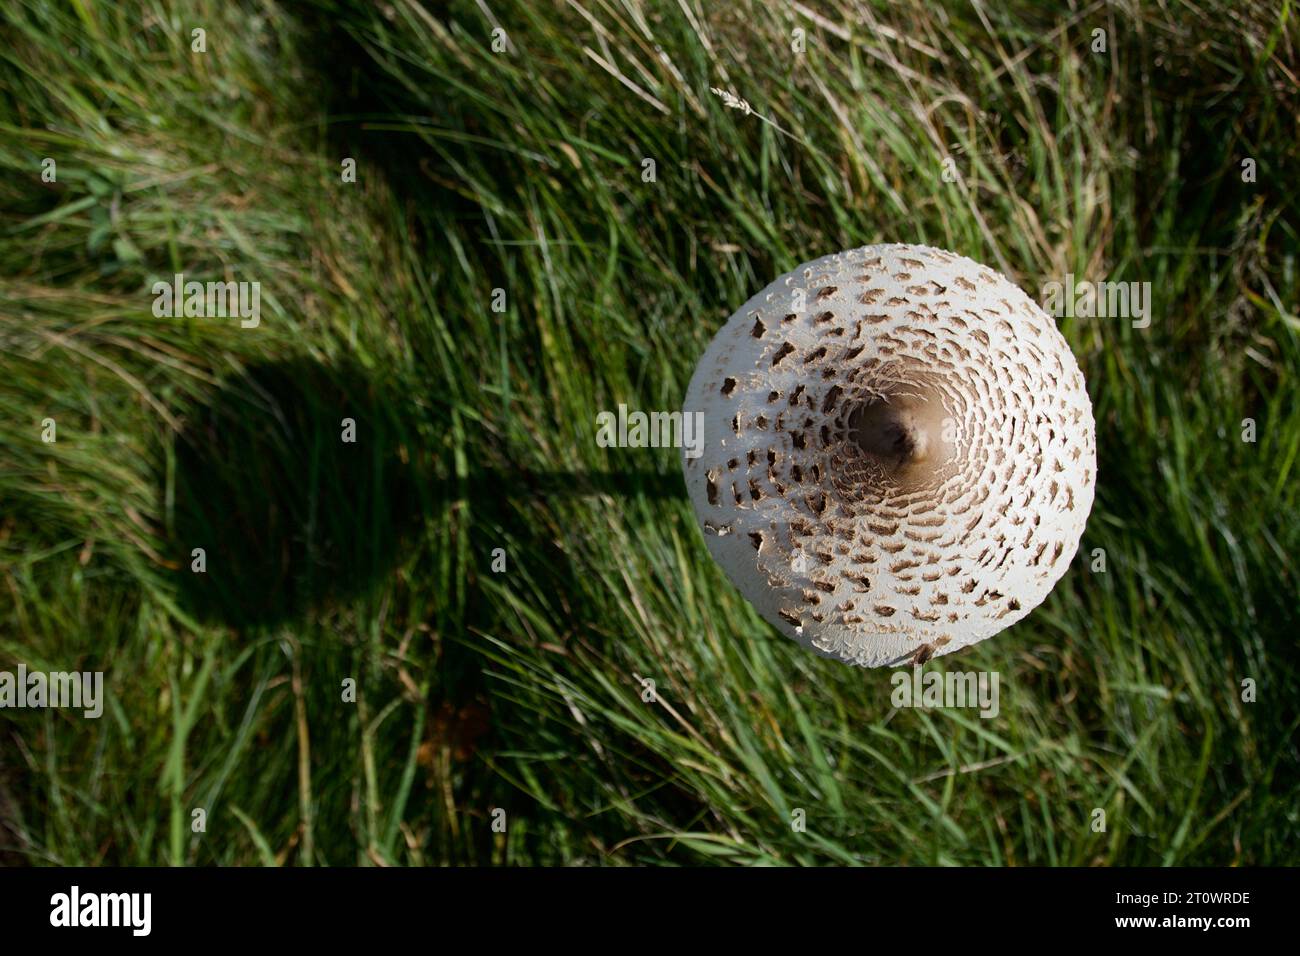 Der Parasol Mushroom, Macrolepiota procera, wirft einen Schatten an einem sonnigen Tag. Dieser große Pilz gilt als eine gute essbare Spezies Stockfoto